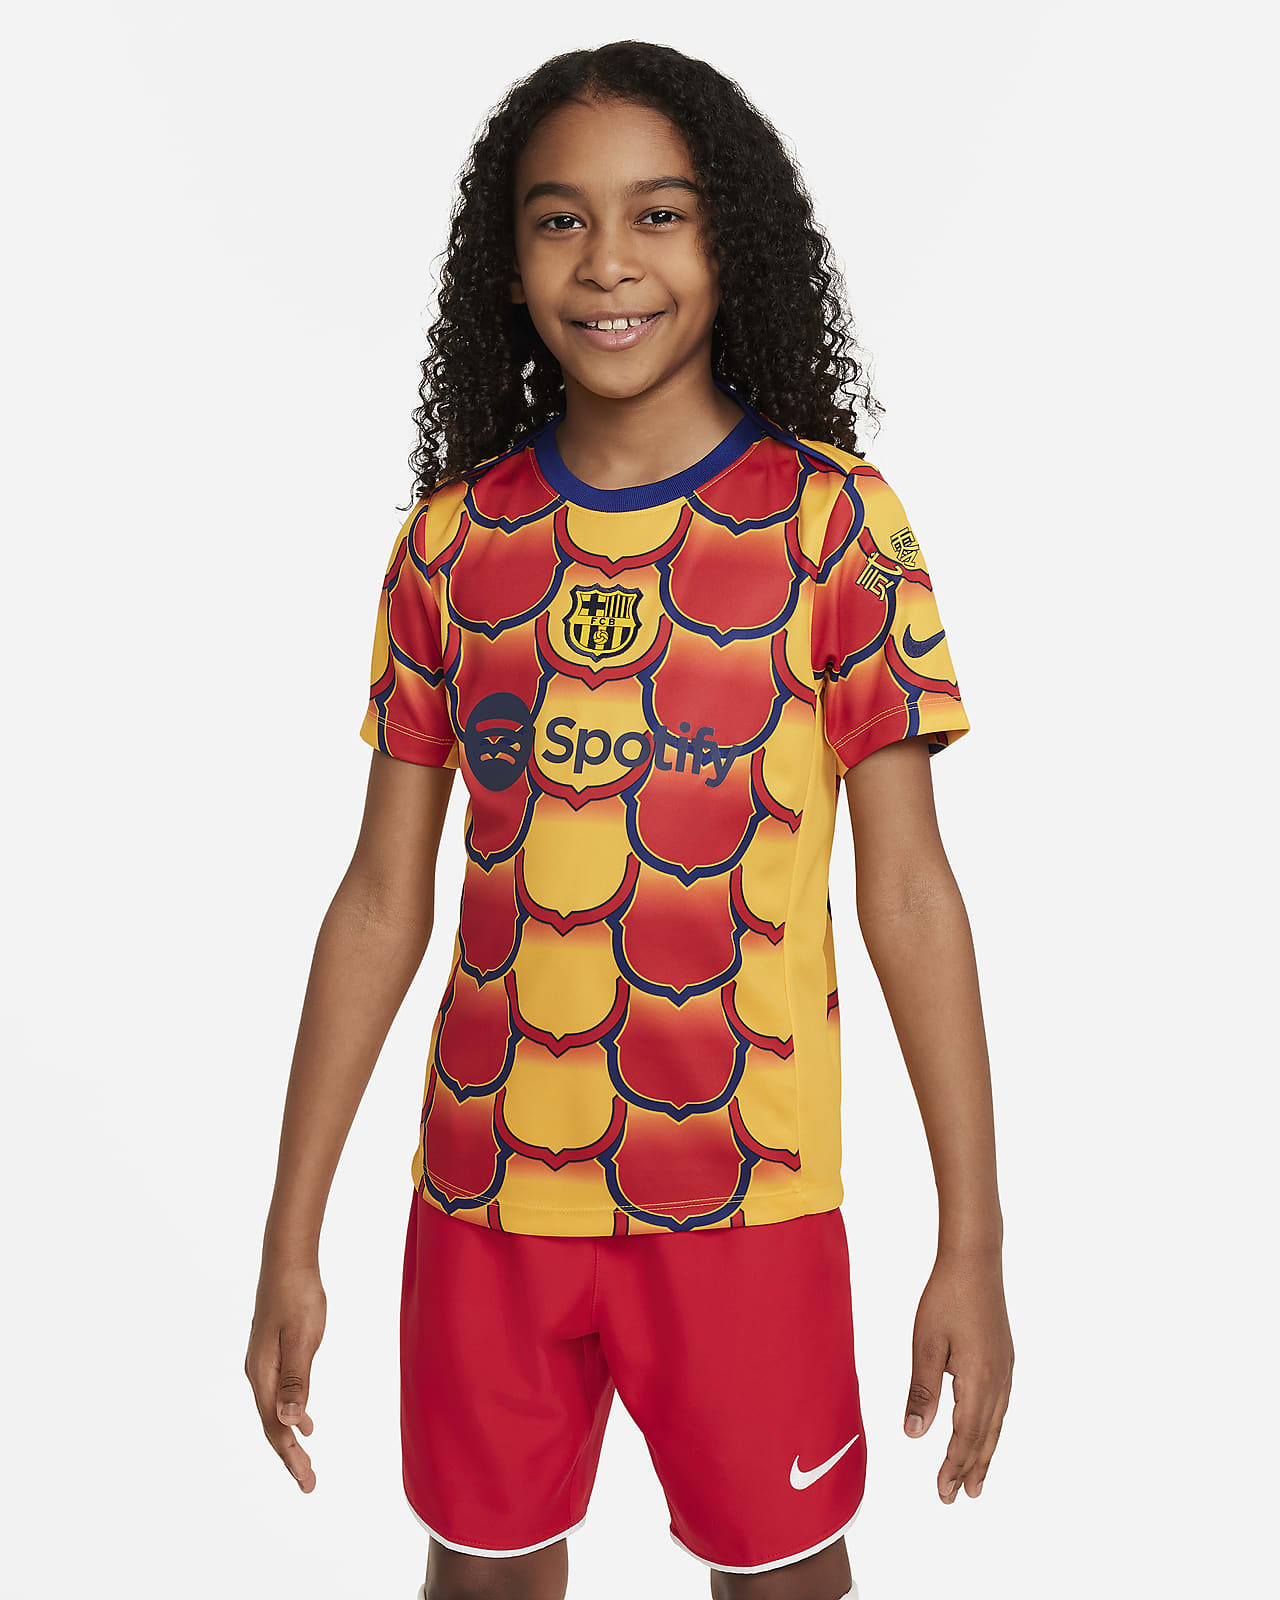 FC Barcelona Academy Pro Nike Dri-FIT mérkőzés előtti futballfelső nagyobb gyerekeknek